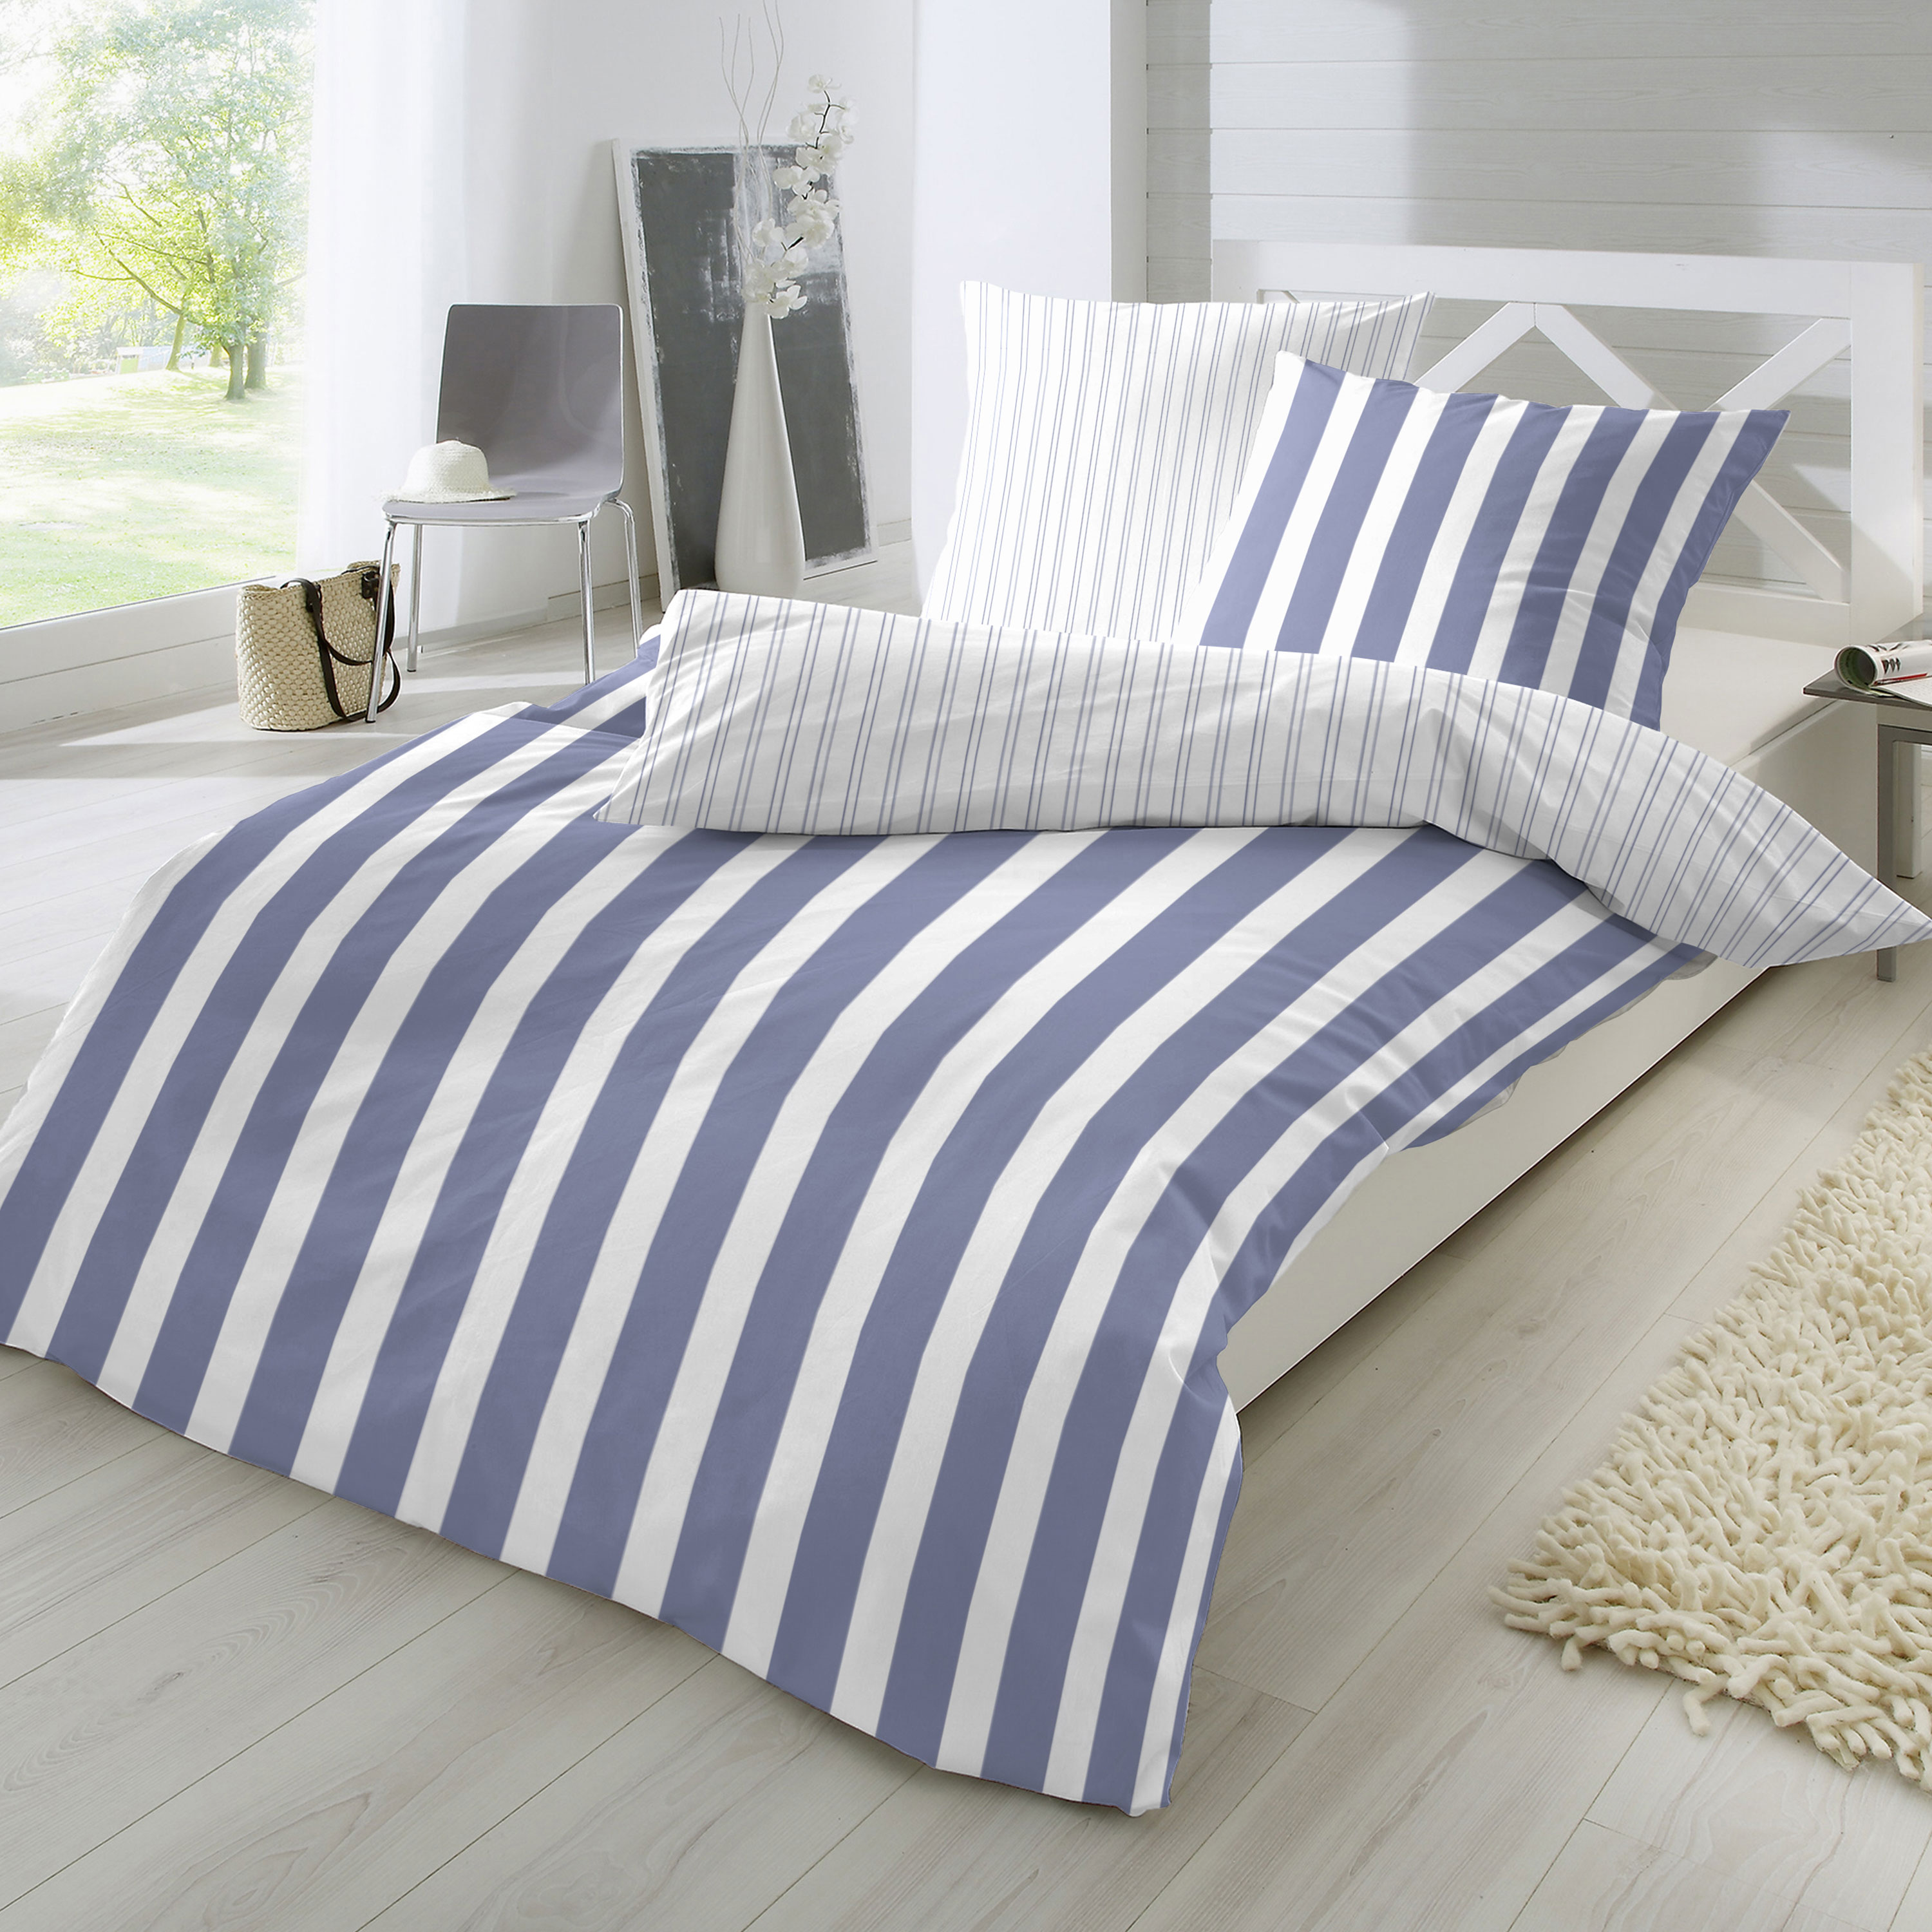 Traumhaft gut schlafen – Perkal-Bettwäsche, 2-teilig, mit Blockstreifen, in versch. Farben und Größen